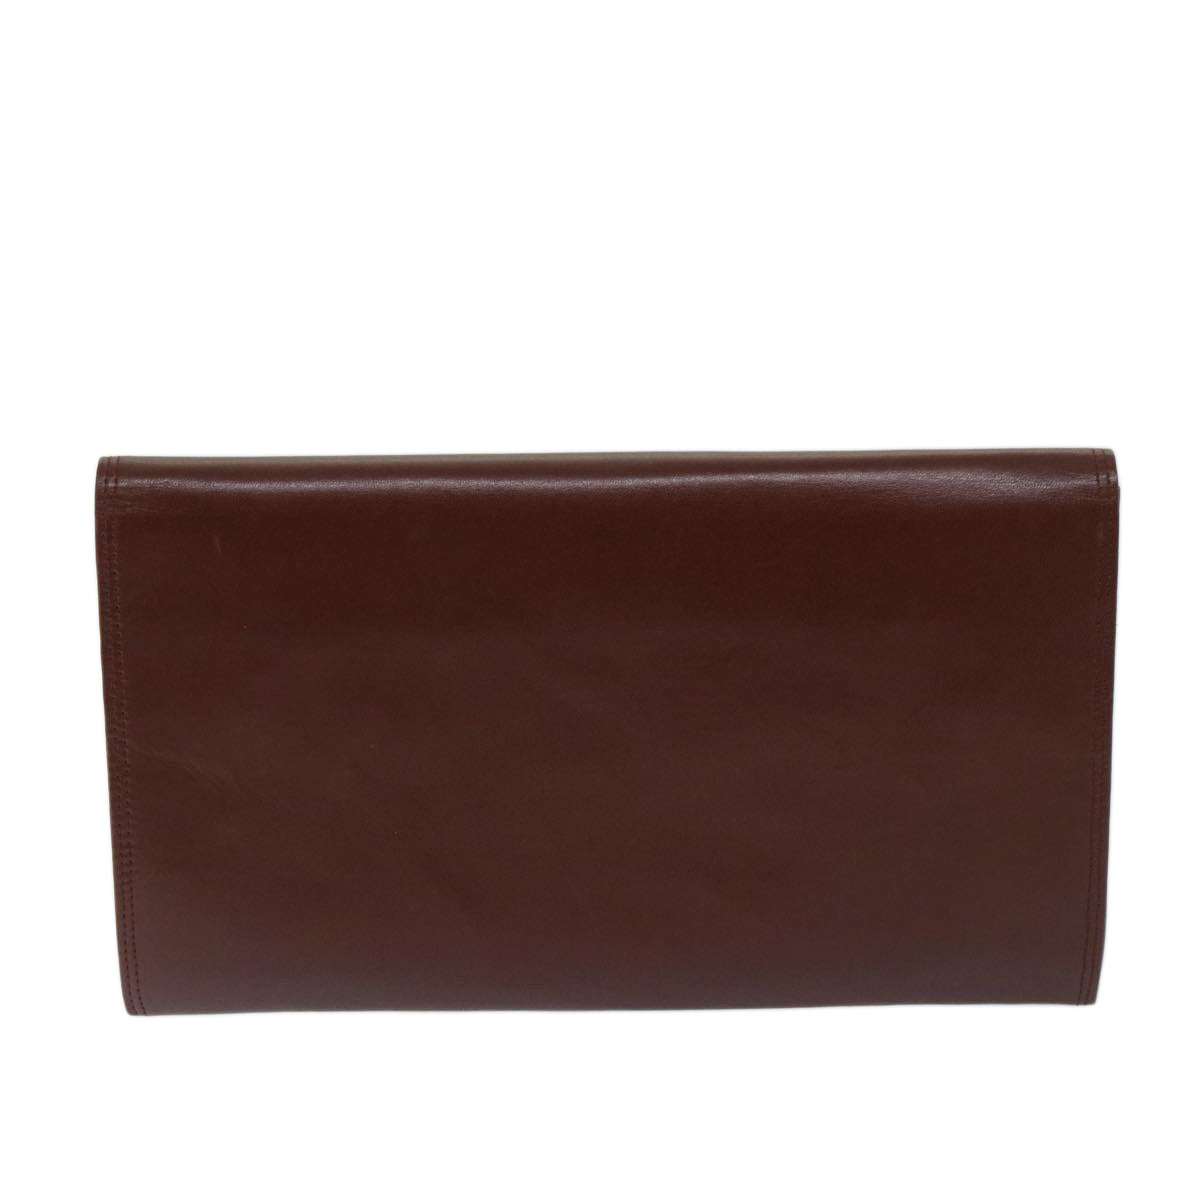 CARTIER Clutch Bag Leather Bordeaux Auth 68889